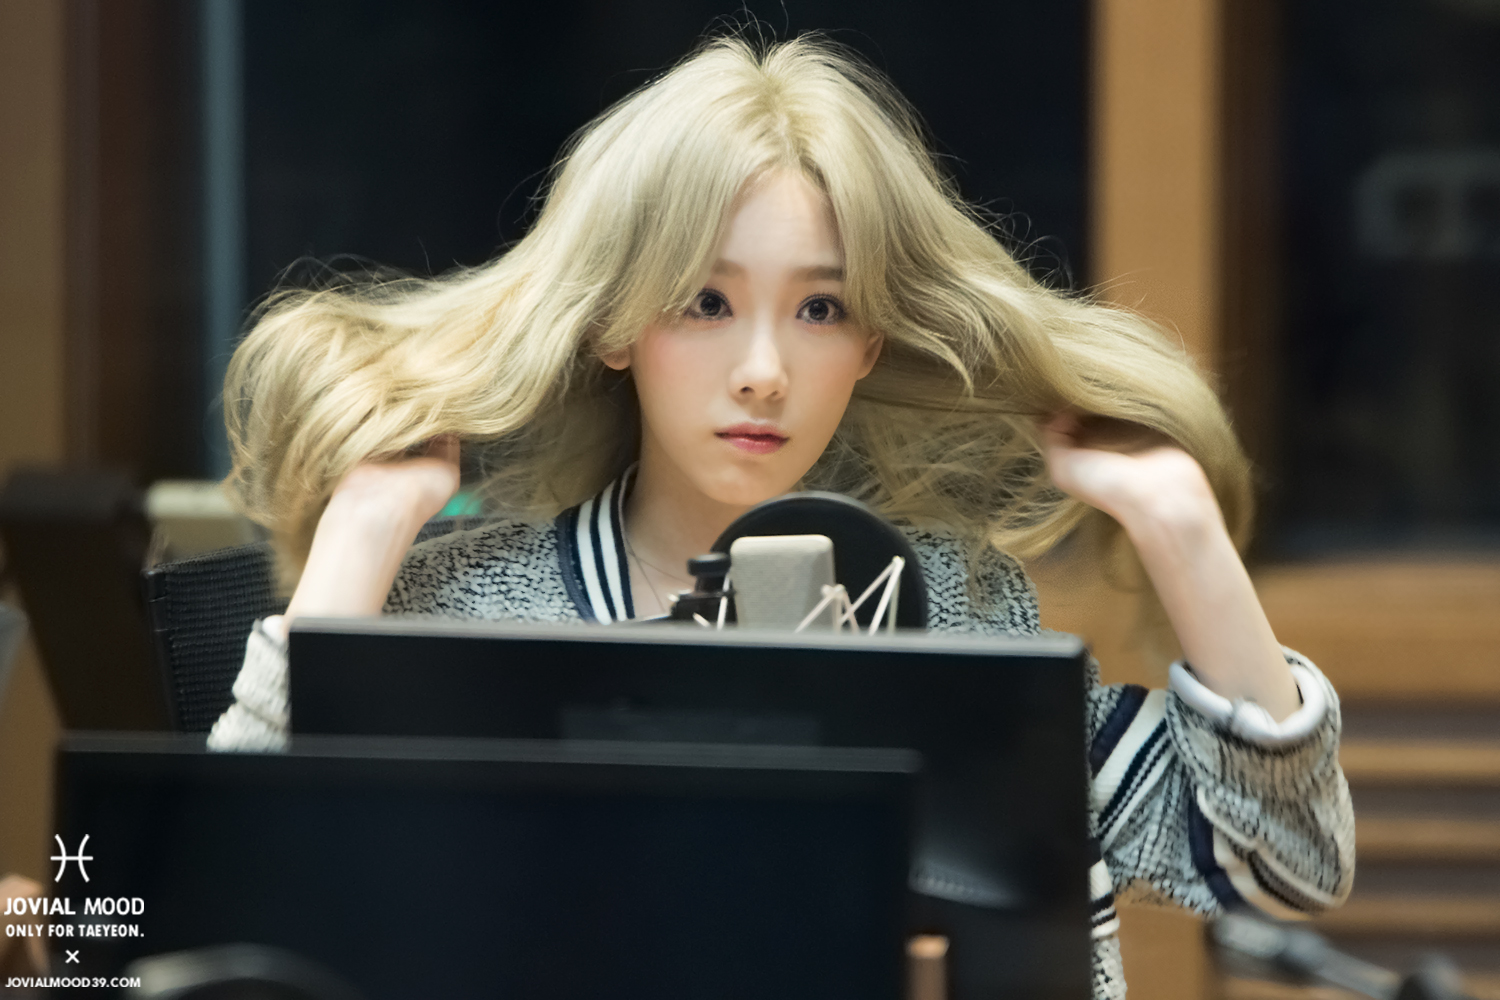 [OTHER][06-02-2015]Hình ảnh mới nhất từ DJ Sunny tại Radio MBC FM4U - "FM Date" - Page 32 28978265830_da0d04c519_o